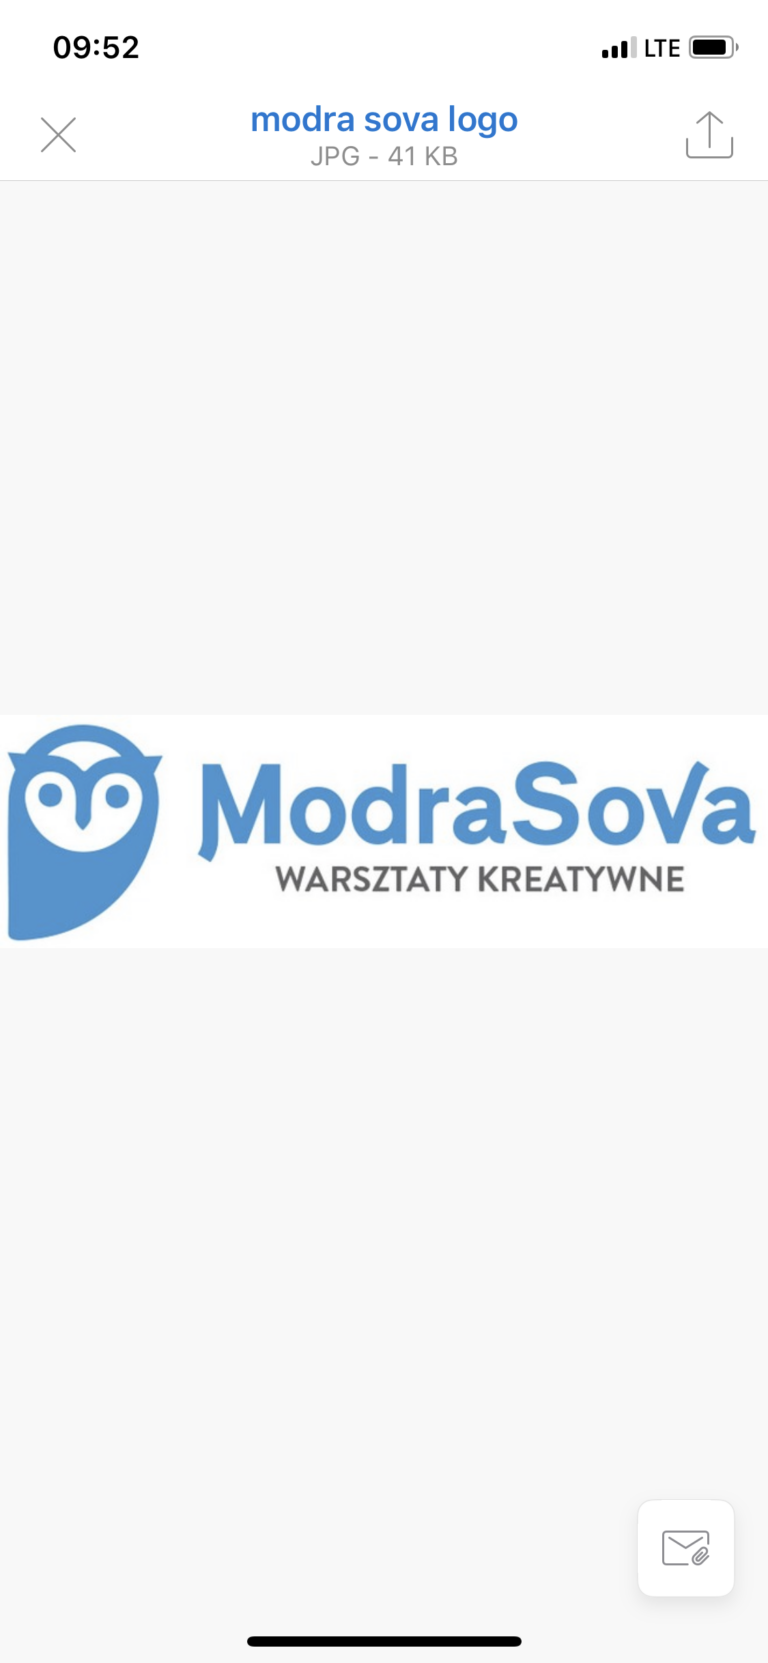 ModraSova nową firmą członkowską SBE